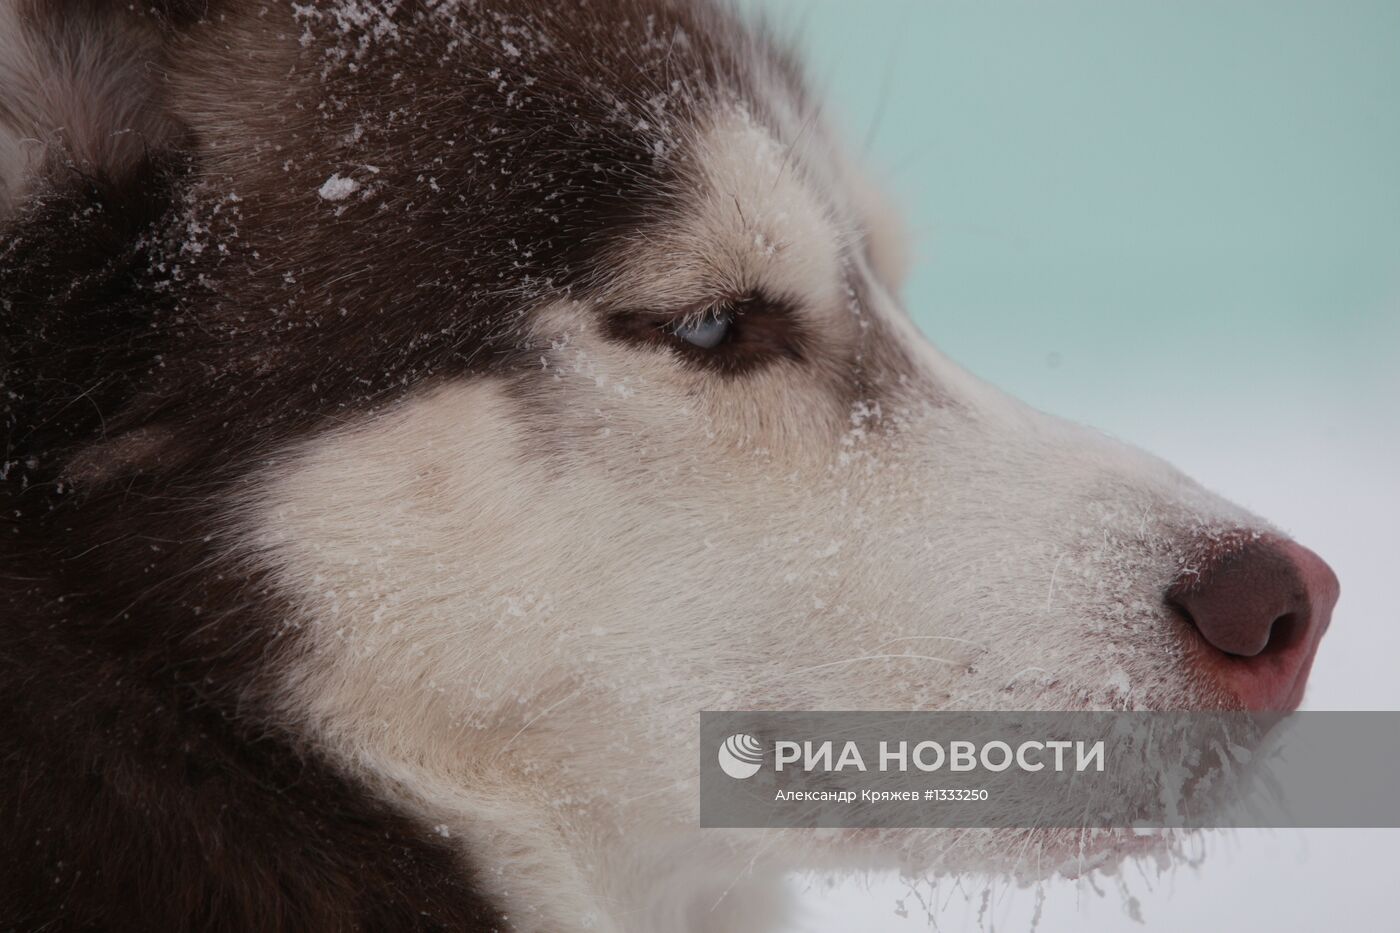 Гонки на собачьих упряжках "Рождественский заезд - 2013"